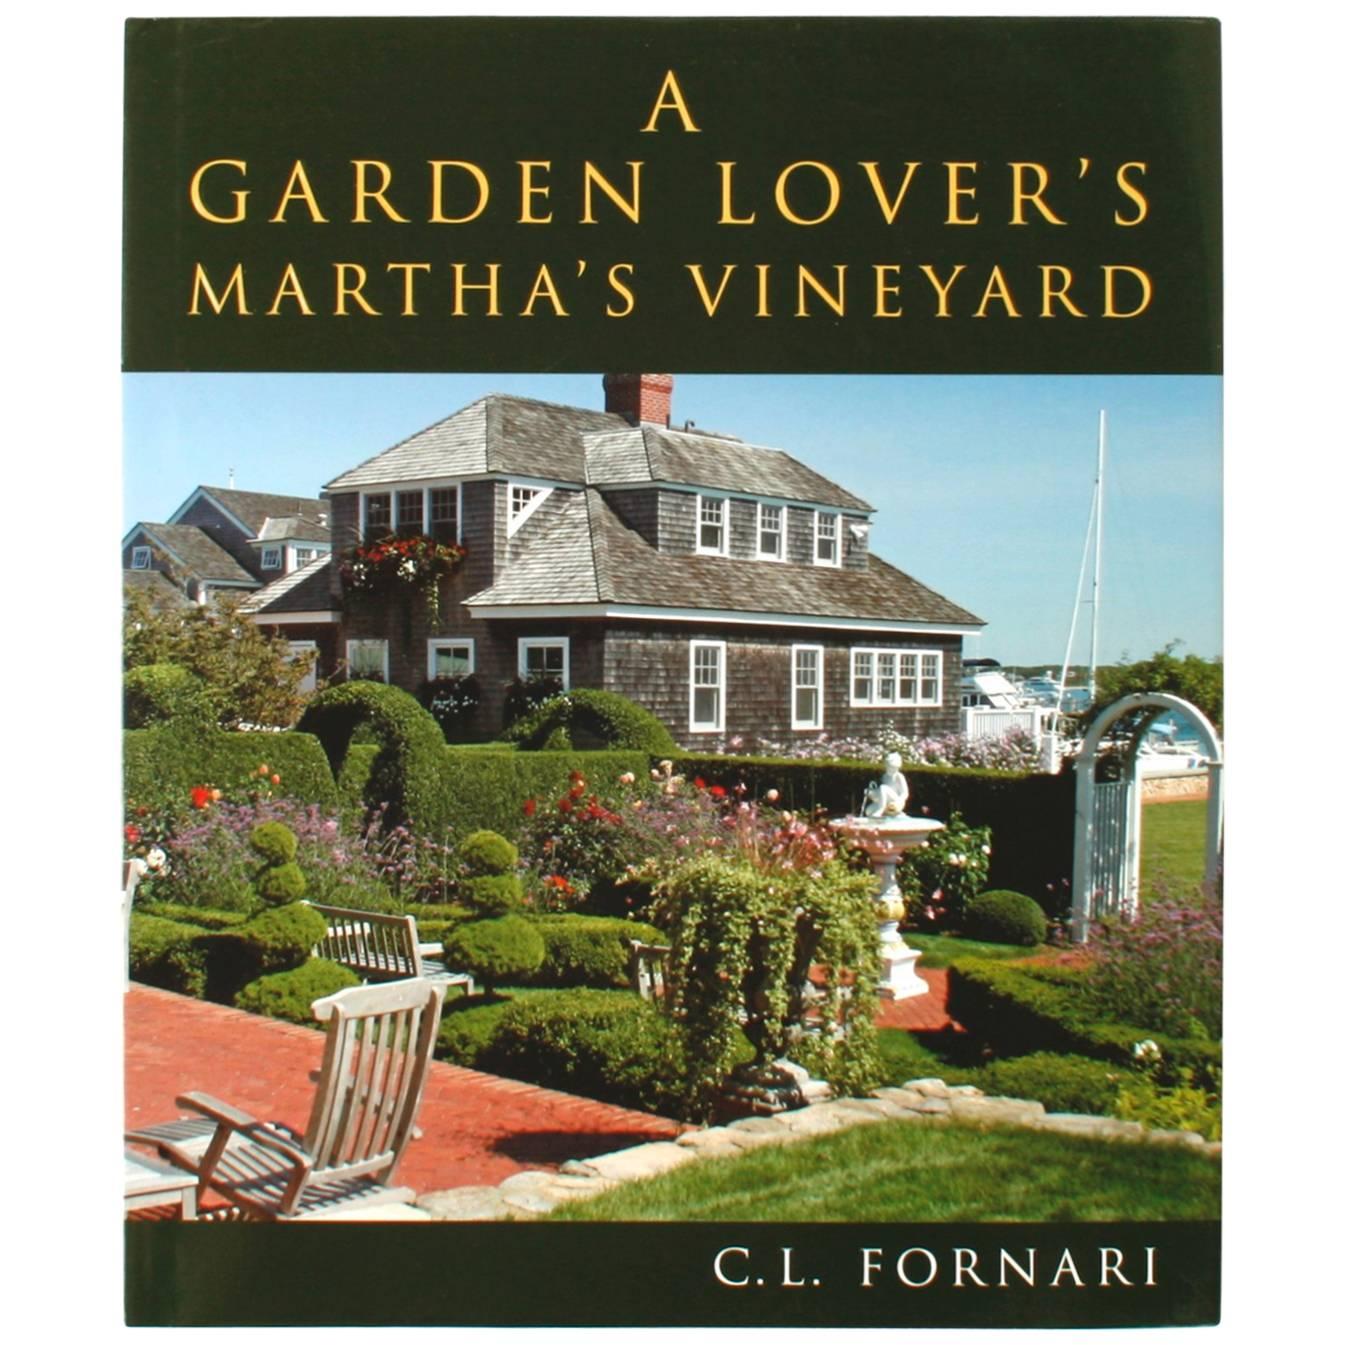 Jardin Lover's Martha's Vineyard (J'aime le jardin), par C.L. Fornari, première édition